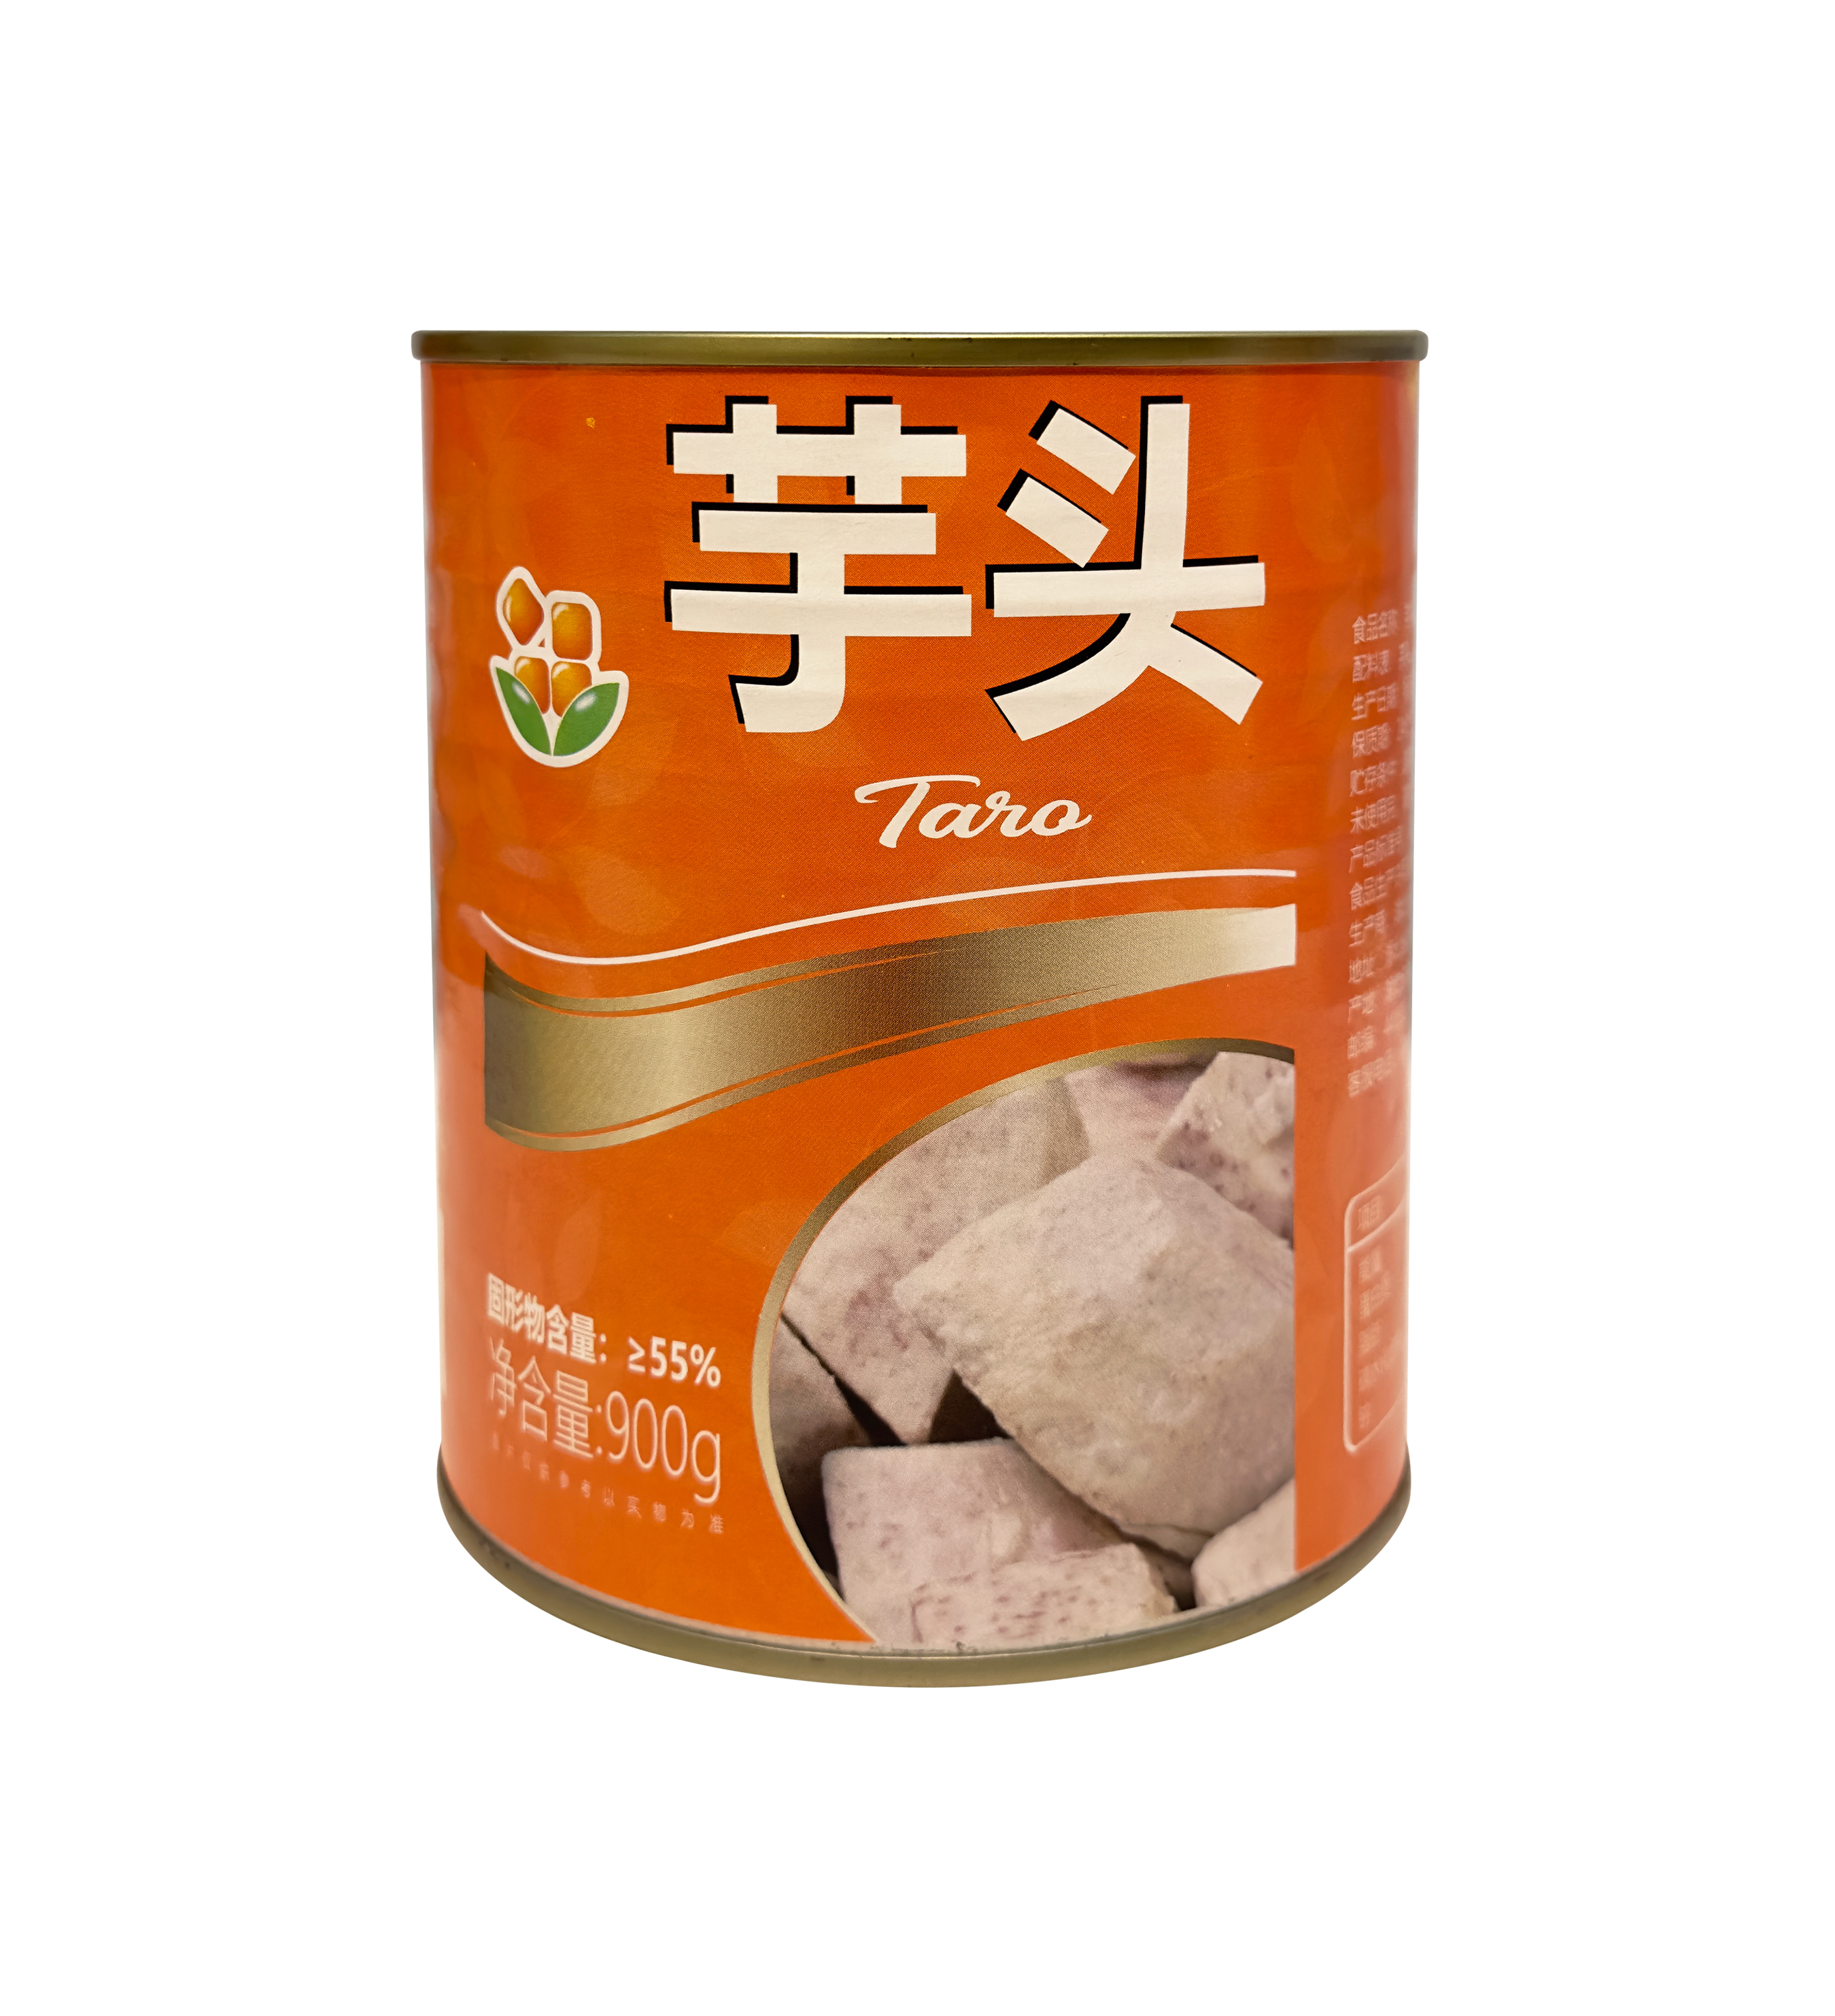 Canned Taro